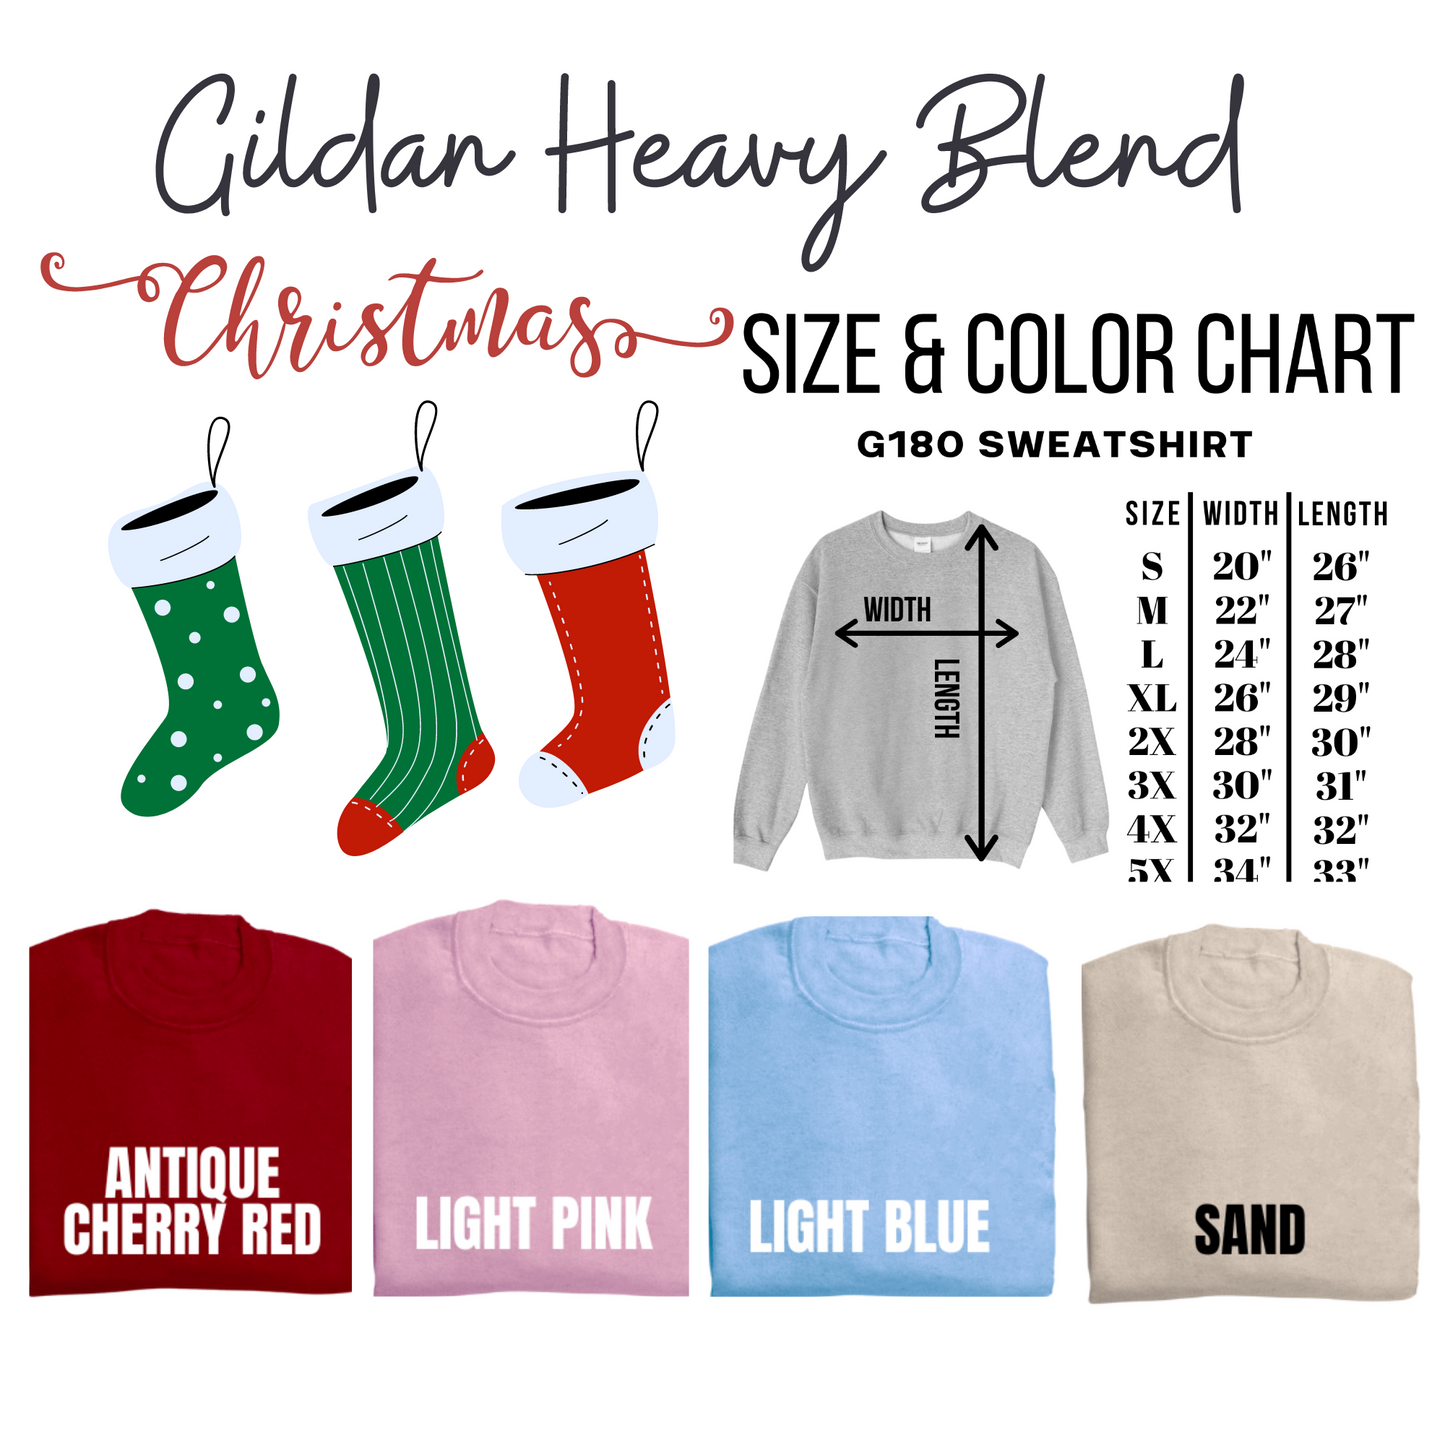 Vintage Christmas and CO Gildan Sweatshirt